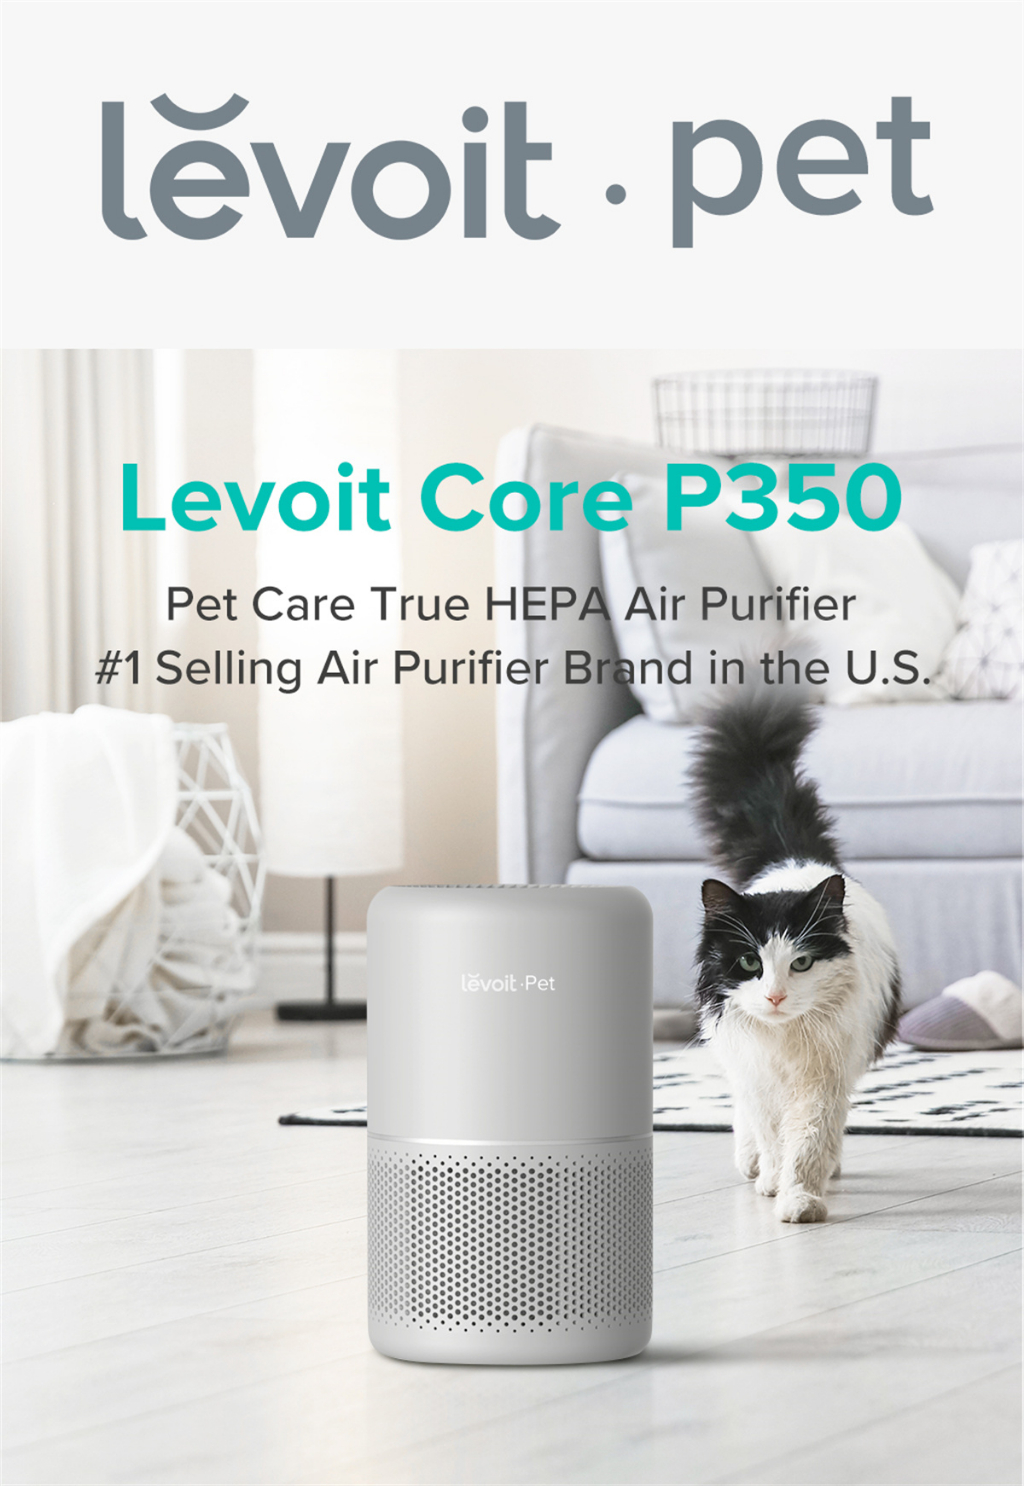 เกี่ยวกับสินค้า Levoit Core P350 Pet Air Purifier กรองฝุ่น PM2.5 เครื่องฟอกอากาศ จอสัมผัส เสียงให้ต่ำถึง 24dB กรองอากาศ 40 ตร.ม สัตว์เลี้ยง ฟอกขน กำจัดกลิ่น ประกัน 2 ปี ผ่อน 0%